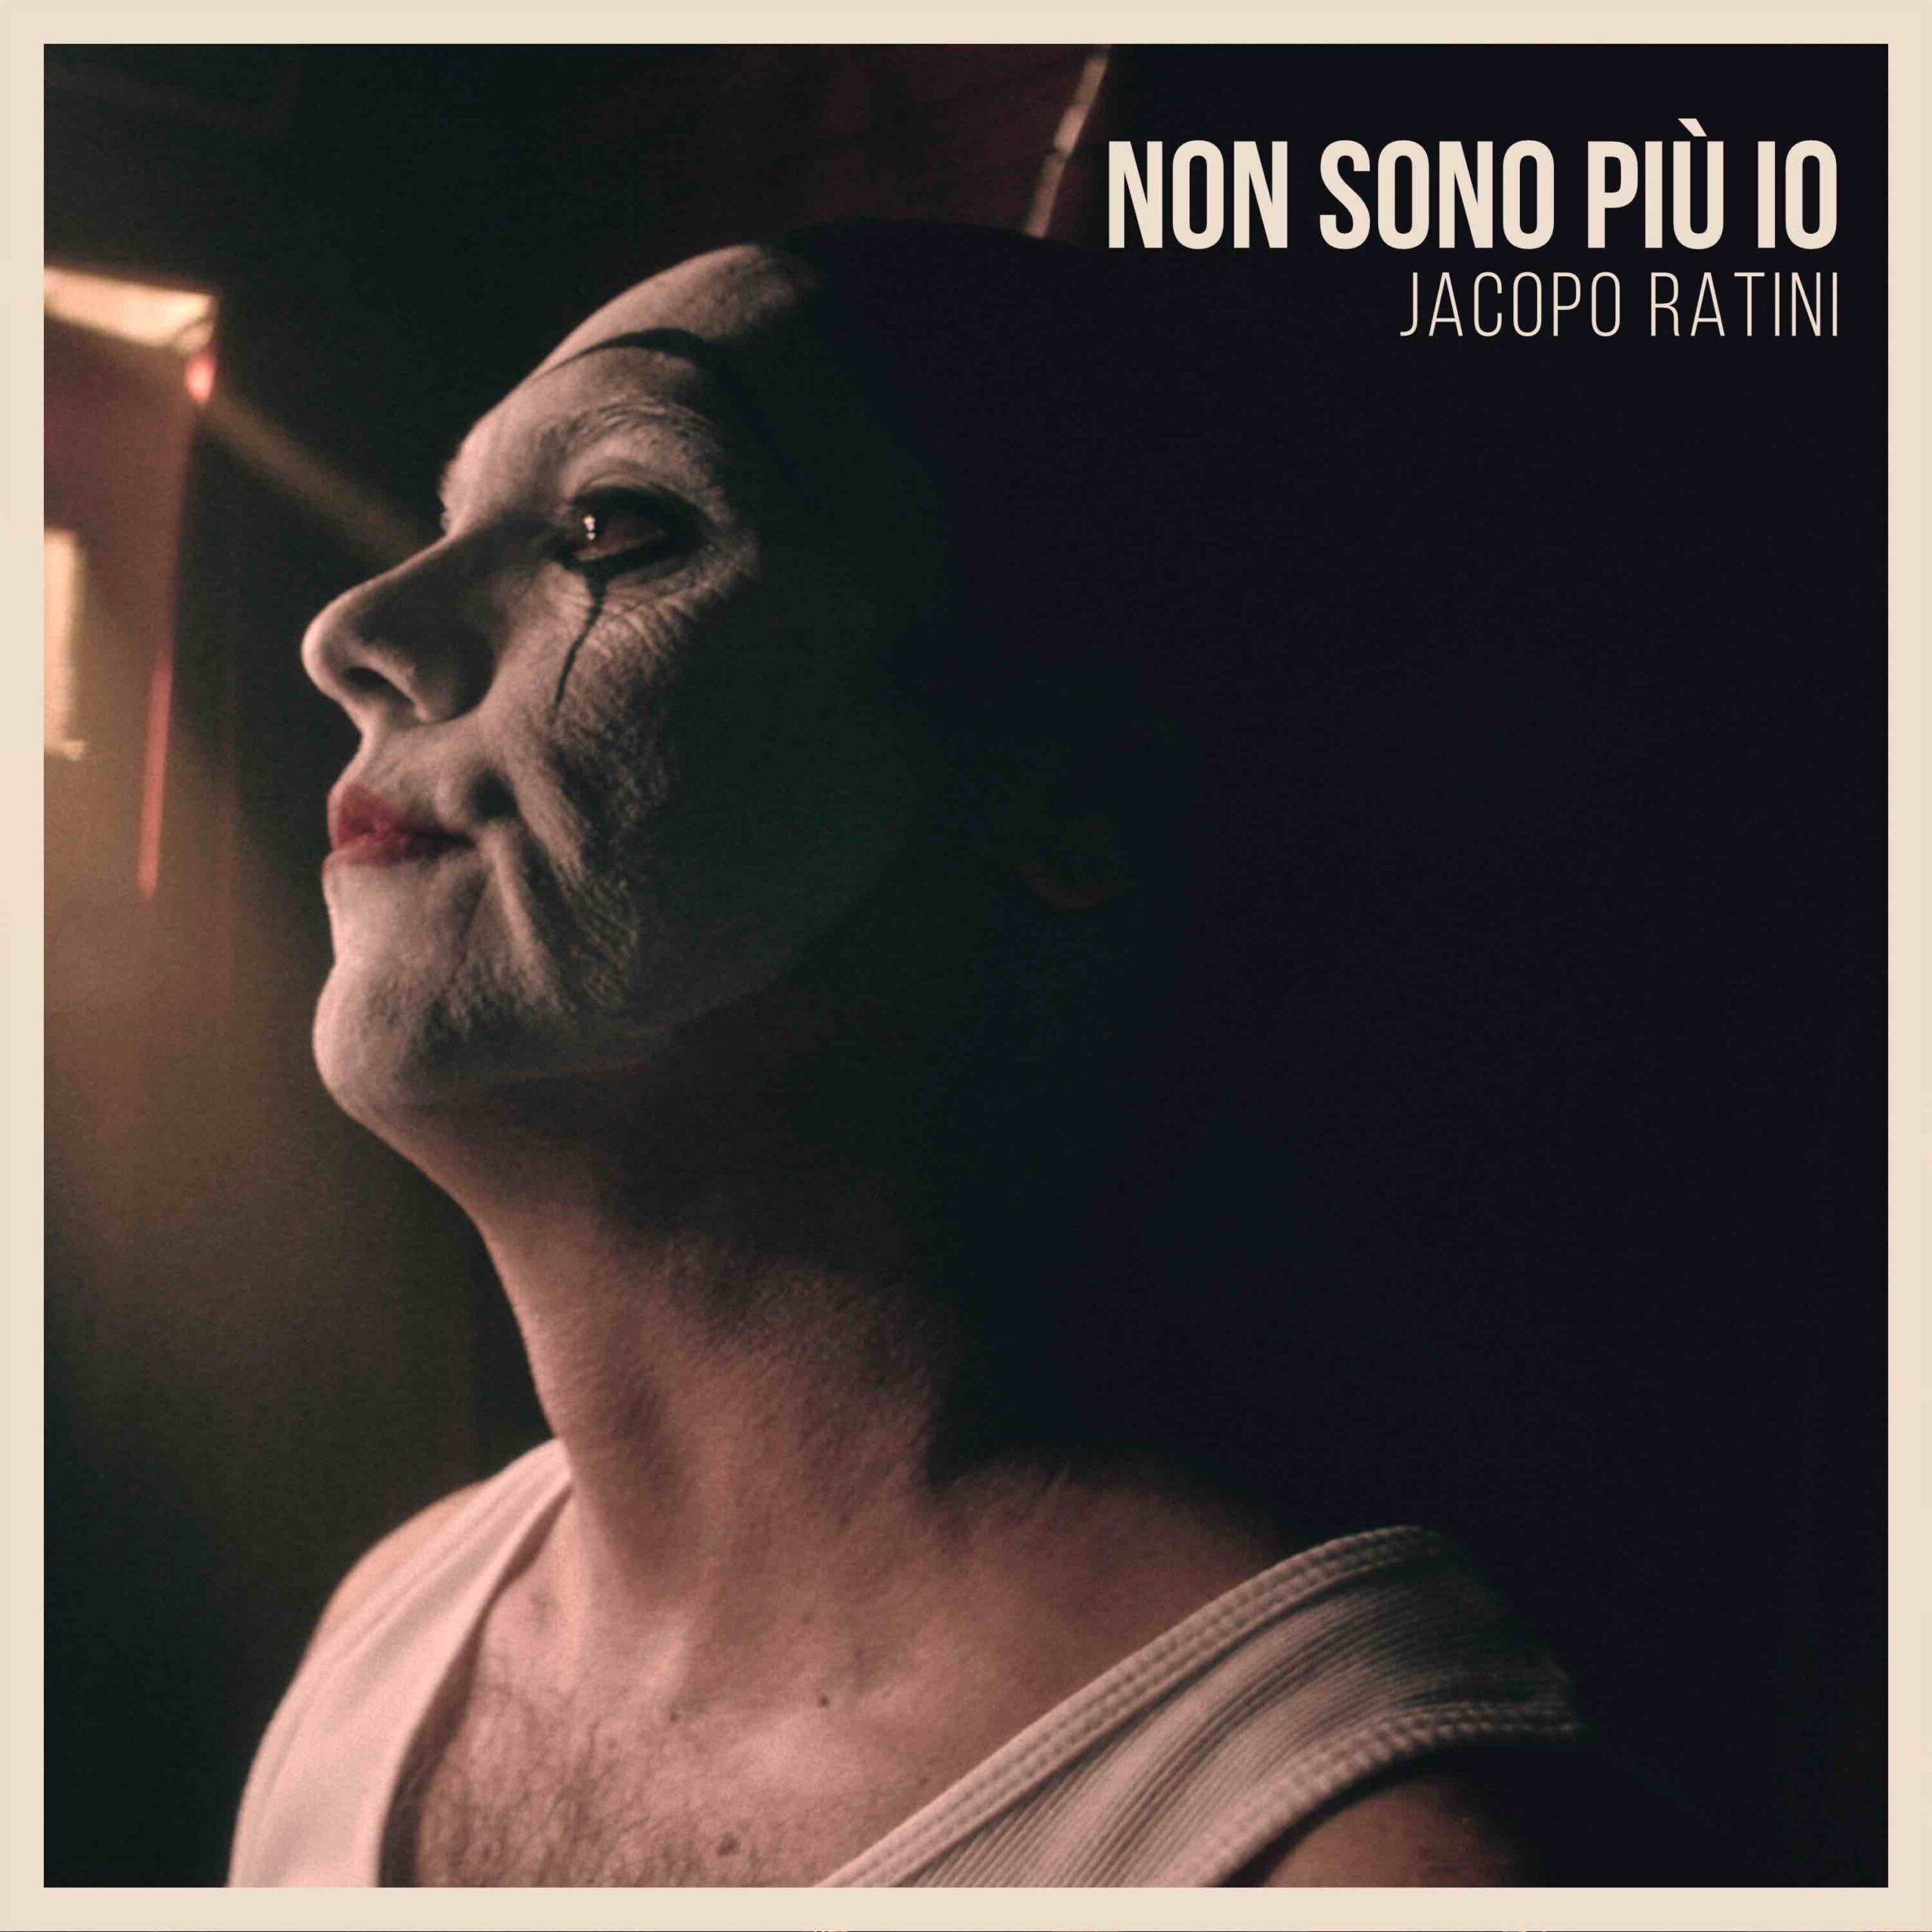 Jacopo Ratini esce il nuovo singolo “Non sono più io”